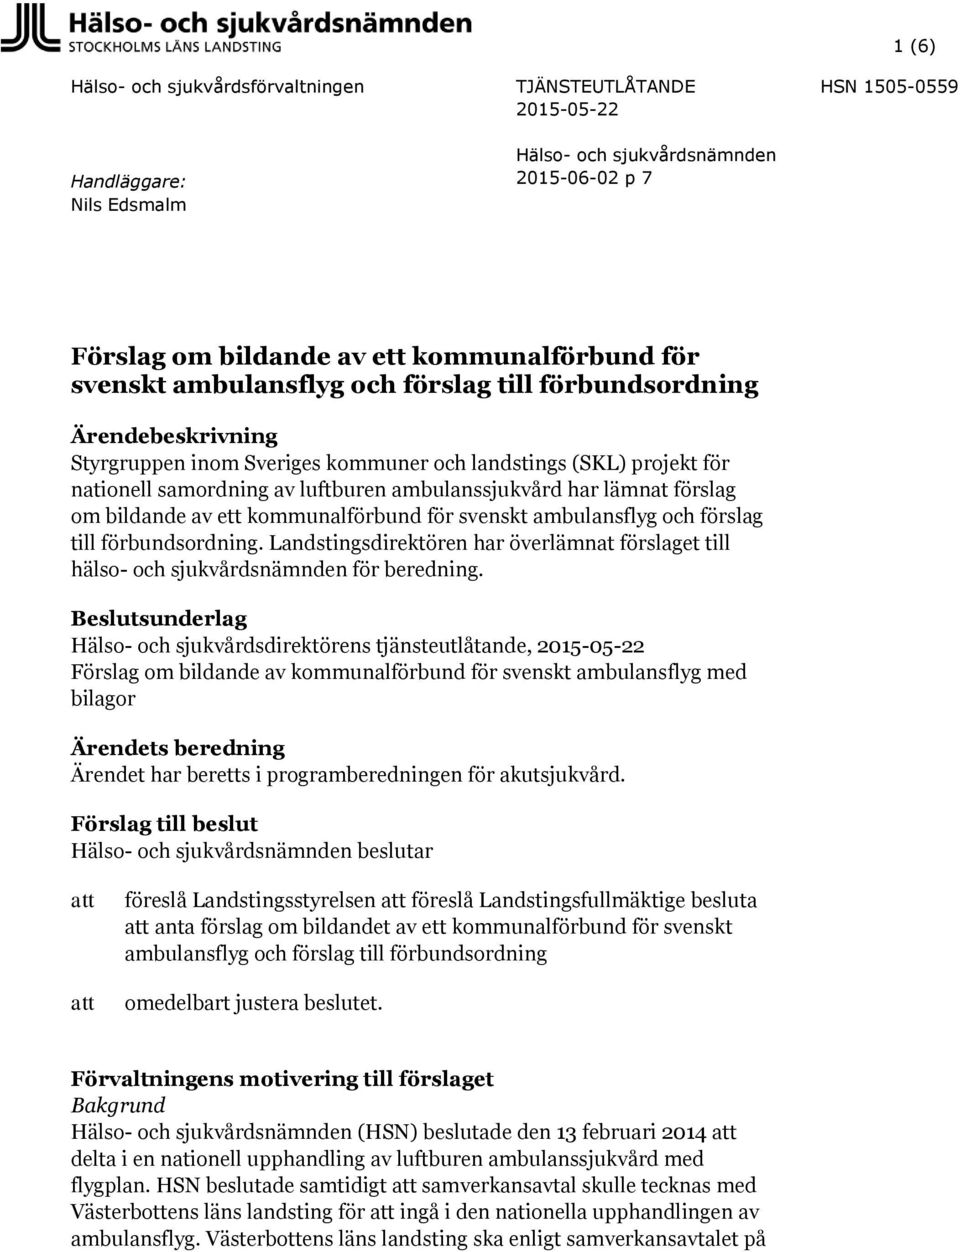 lämnat förslag om bildande av ett kommunalförbund för svenskt ambulansflyg och förslag till förbundsordning.